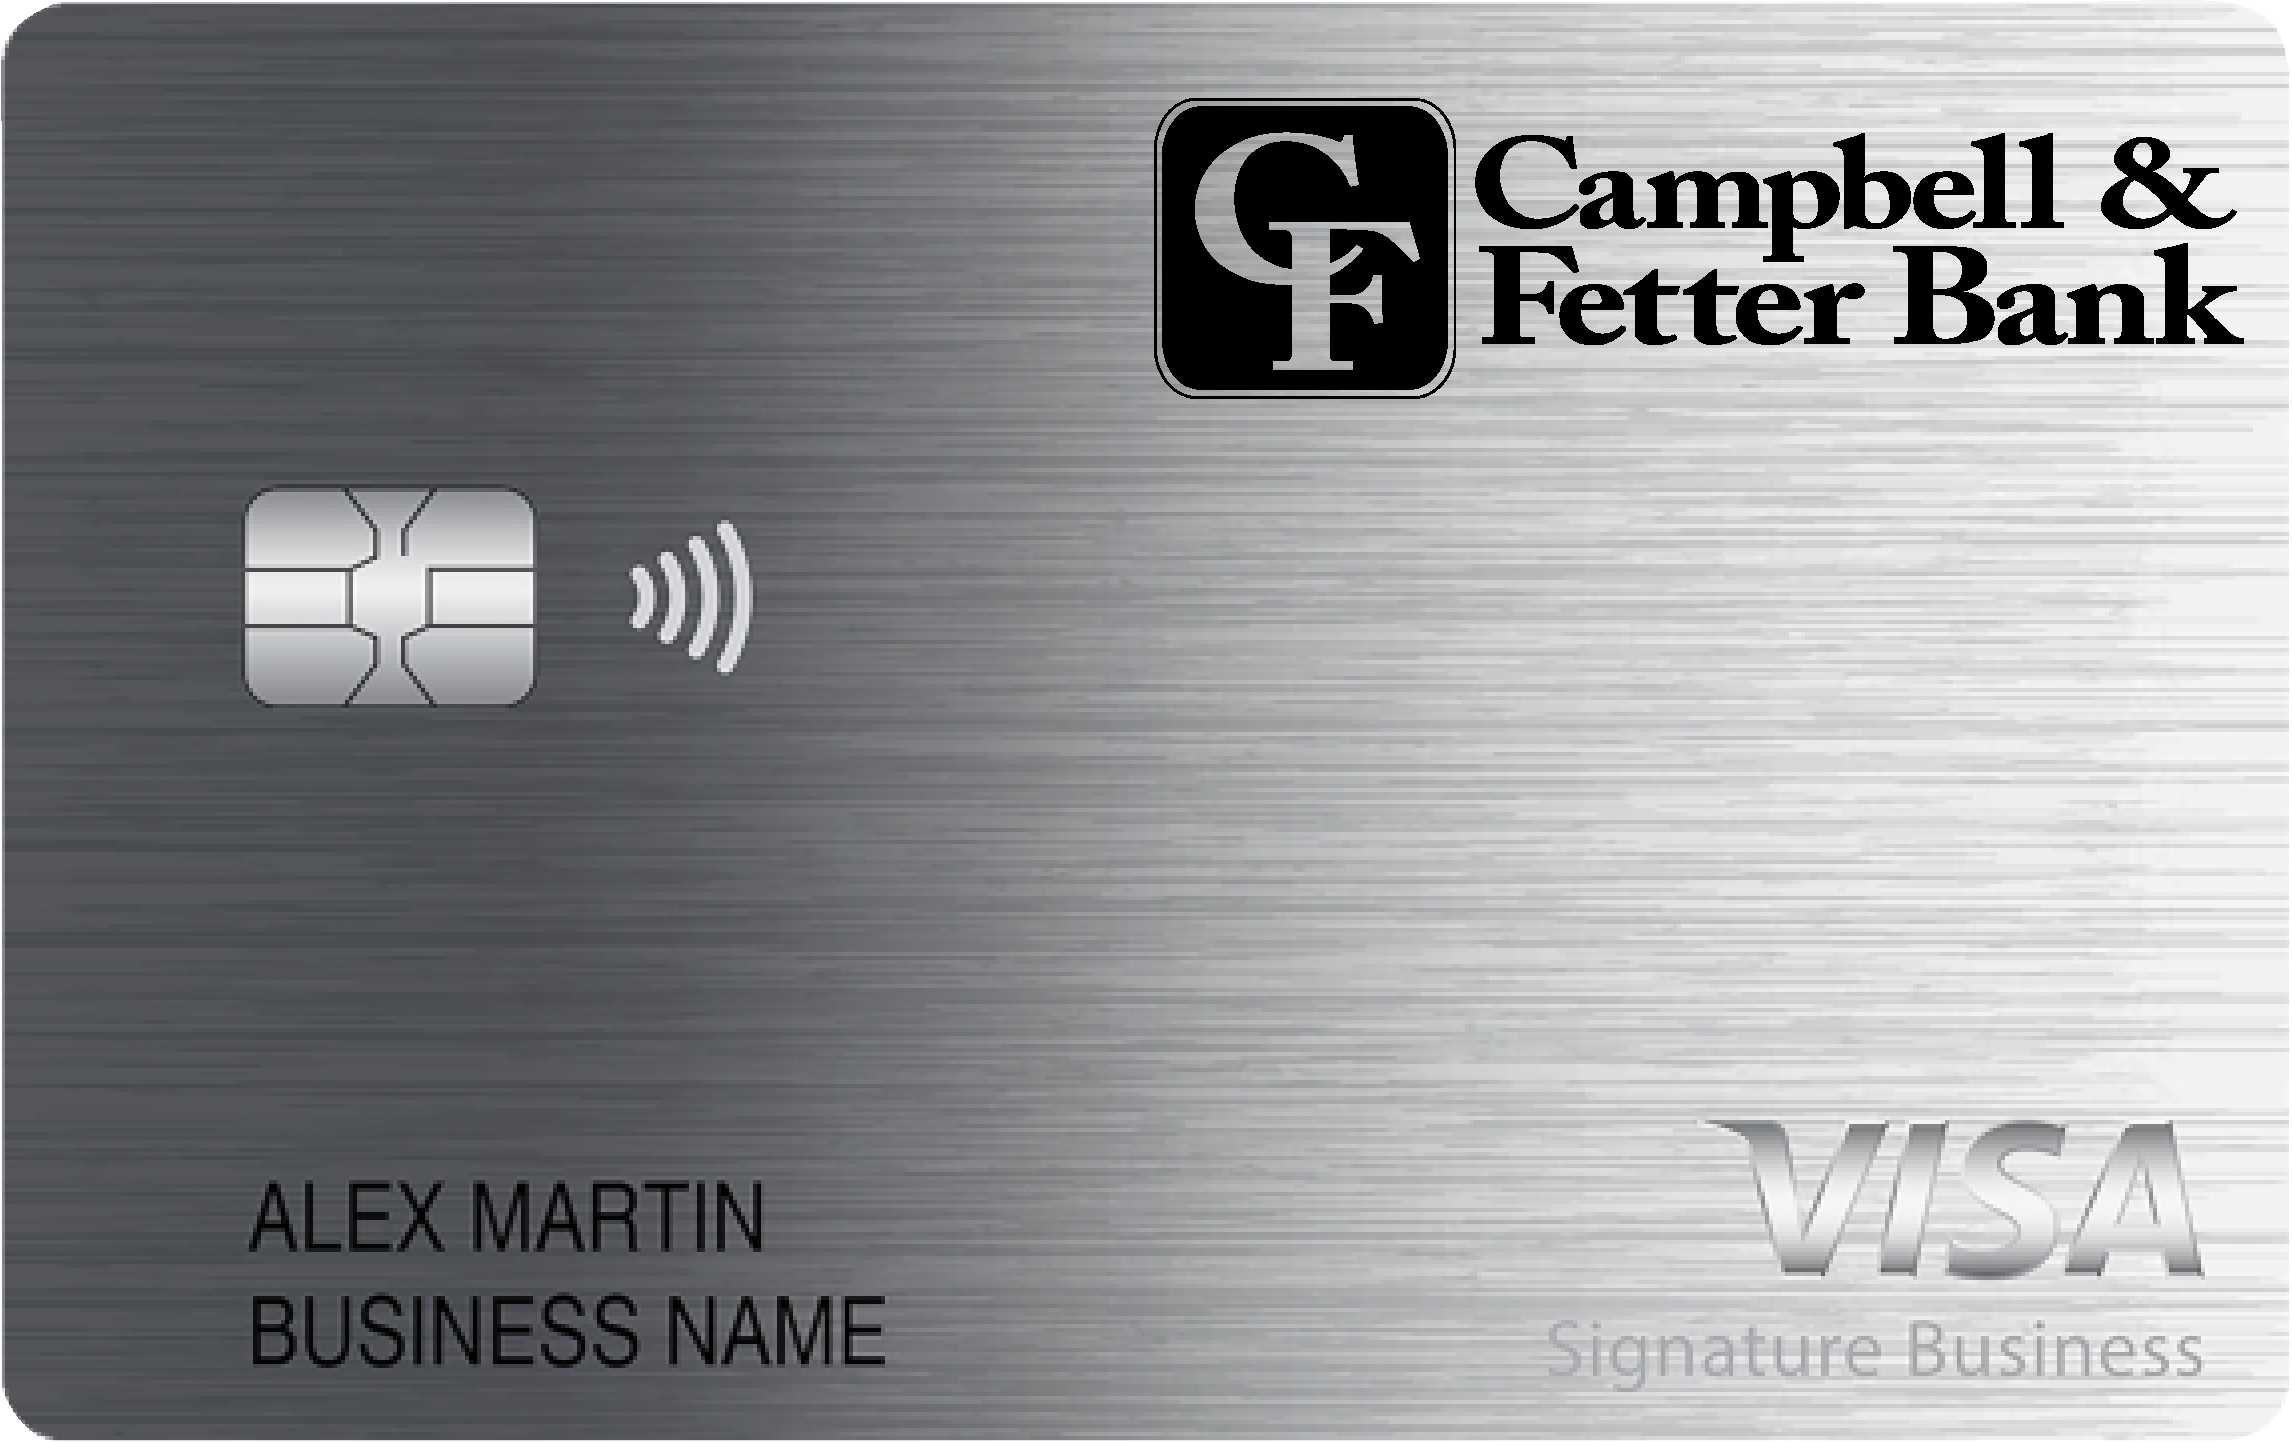 Campbell & Fetter Bank Smart Business Rewards Card